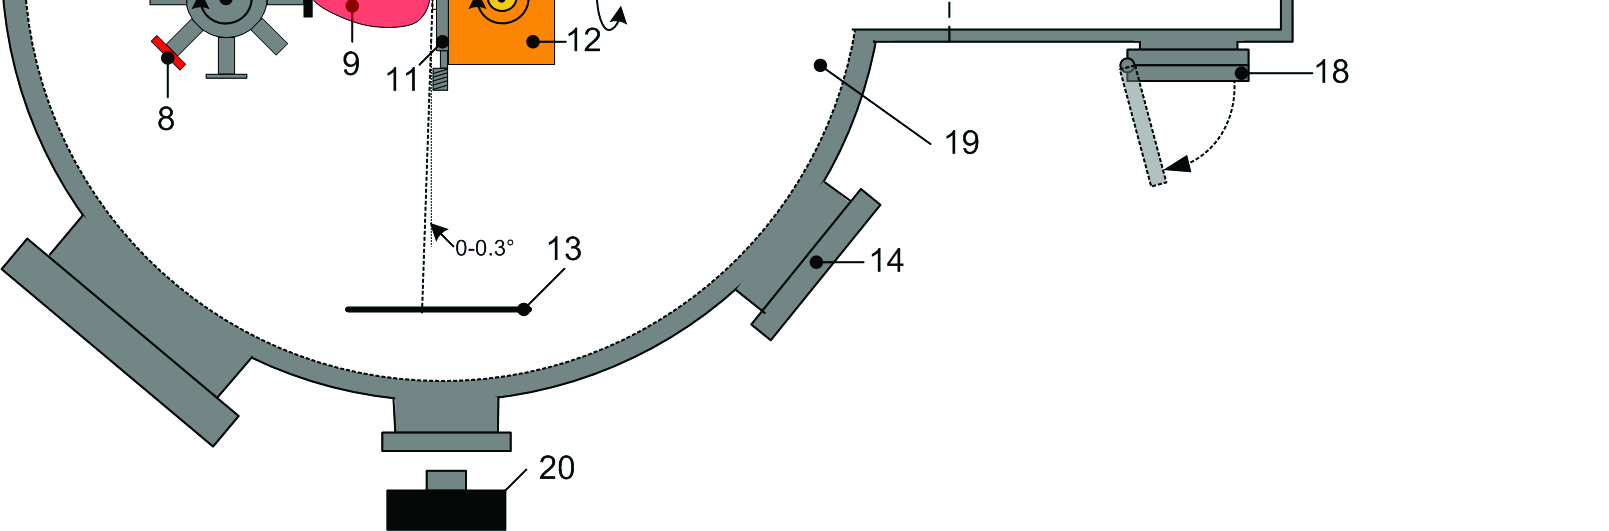 Figur 21: Skisse av PLD system under deponering. Adoptert figur fra referanse [4].